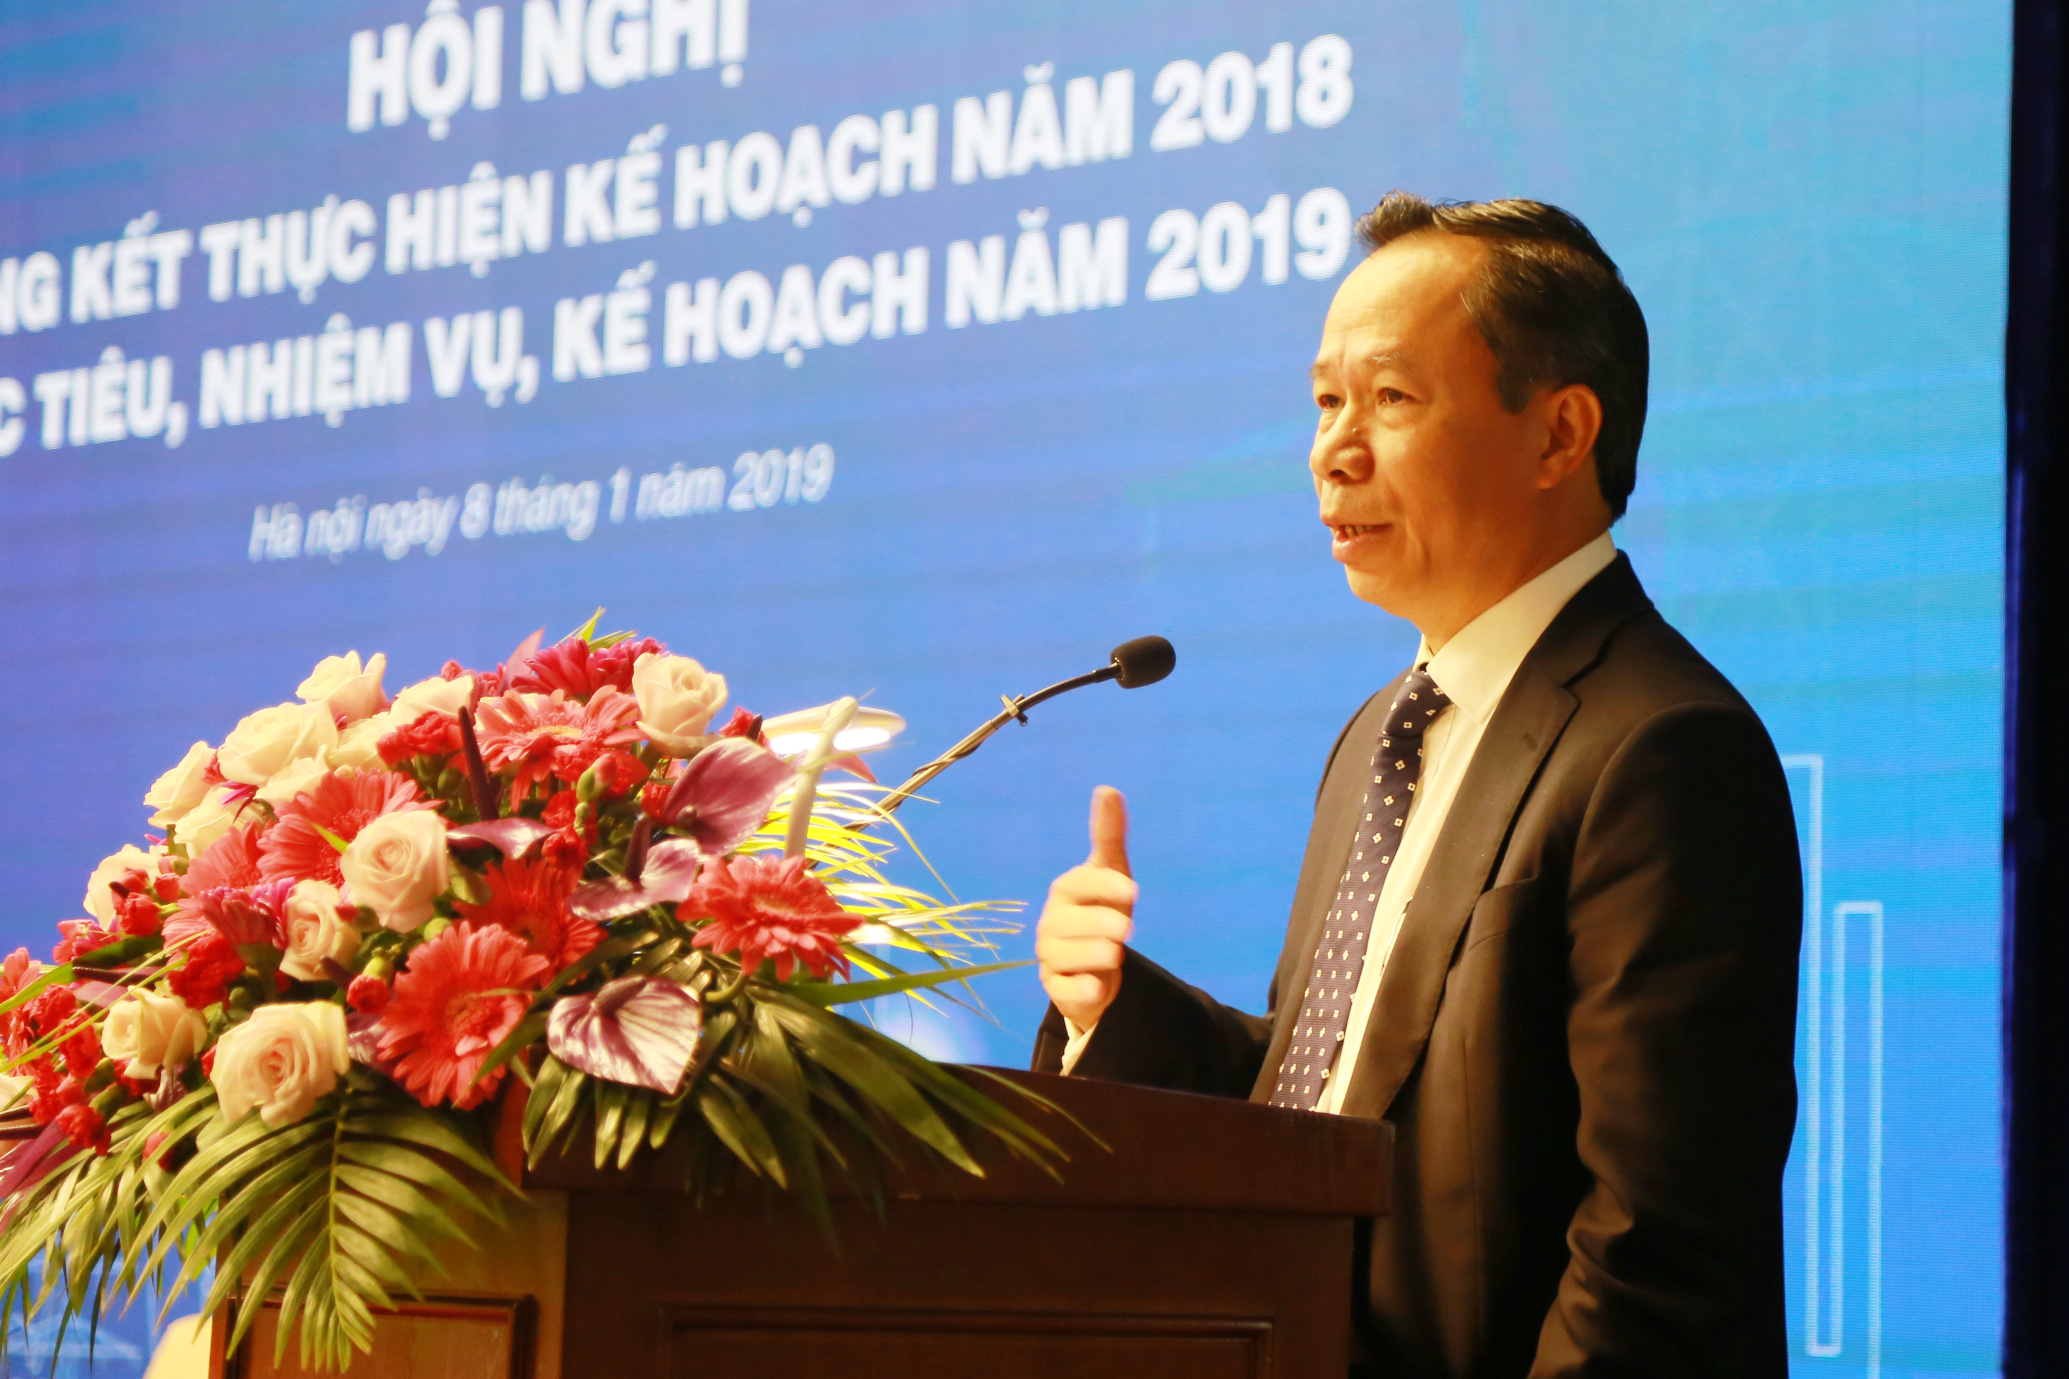 Ông Thiều Kim Quỳnh - Chủ tịch kiêm Tổng Giám đốc Tổng công ty Điện lực miền Bắc